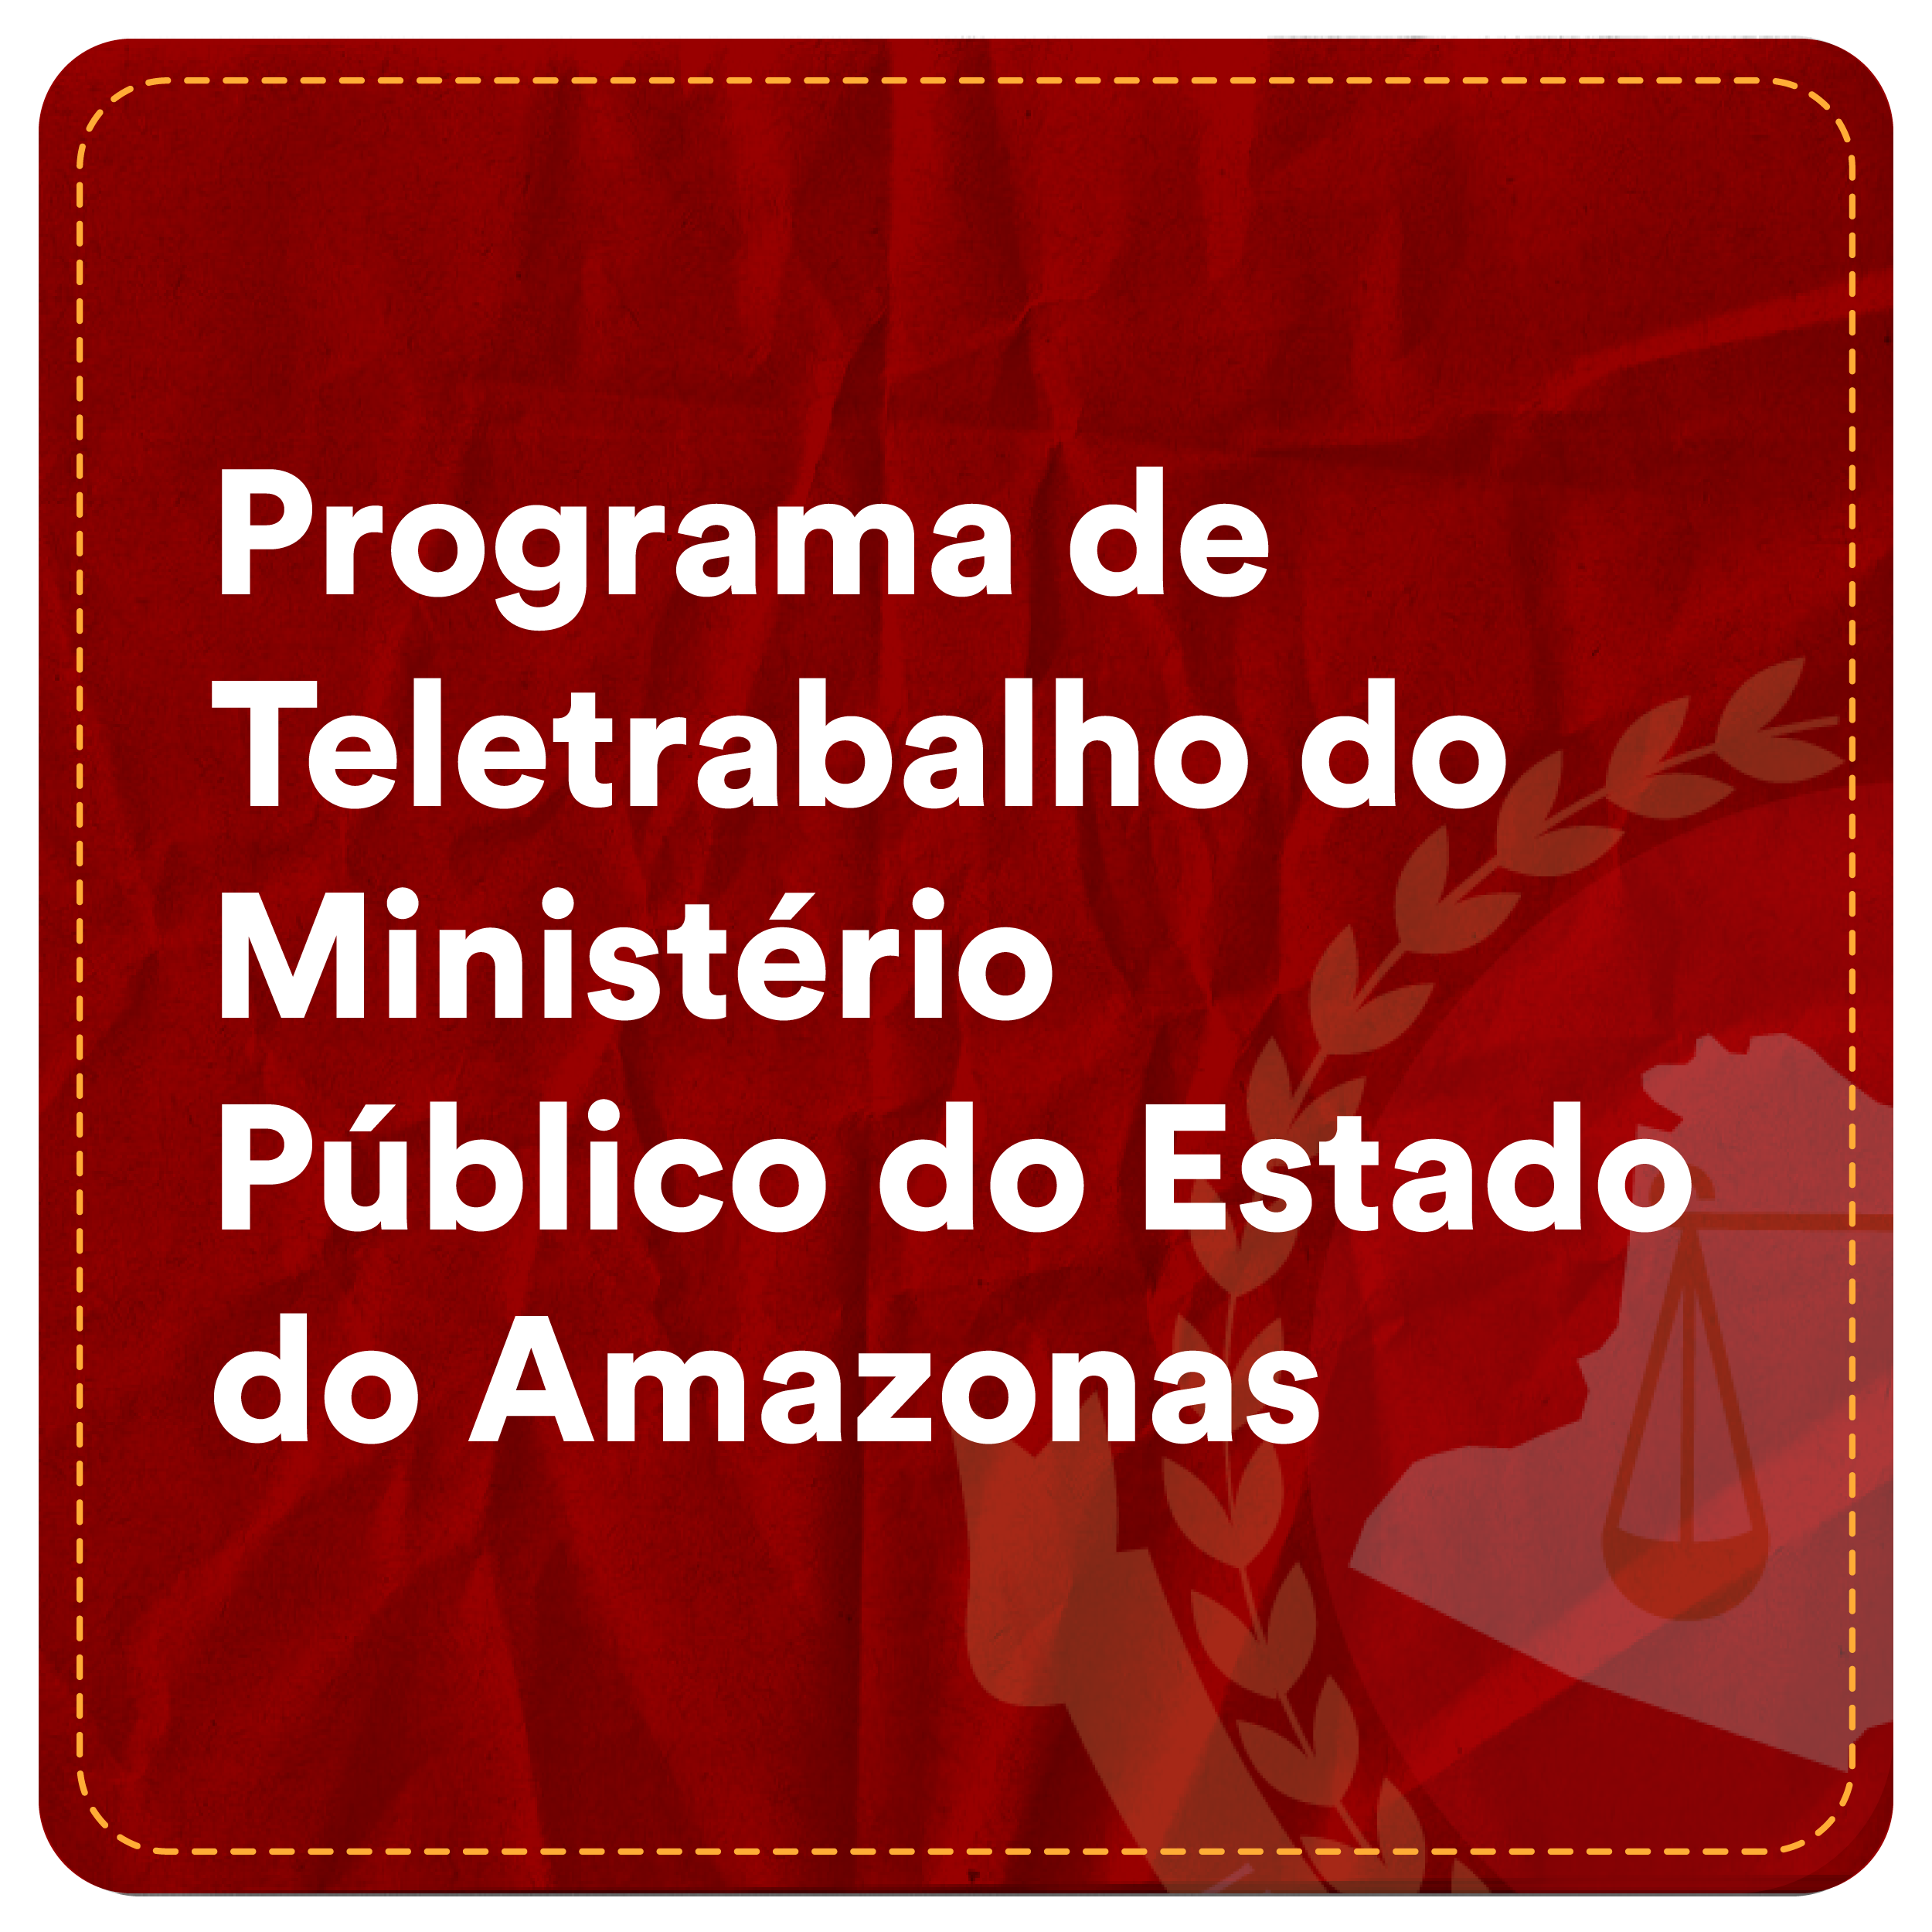 6° Turma - Programa de Teletrabalho do Ministério Público do Estado do Amazonas seleção de ações em lote Programa de Teletrabalho do Ministério Público do Estado do Amazonas